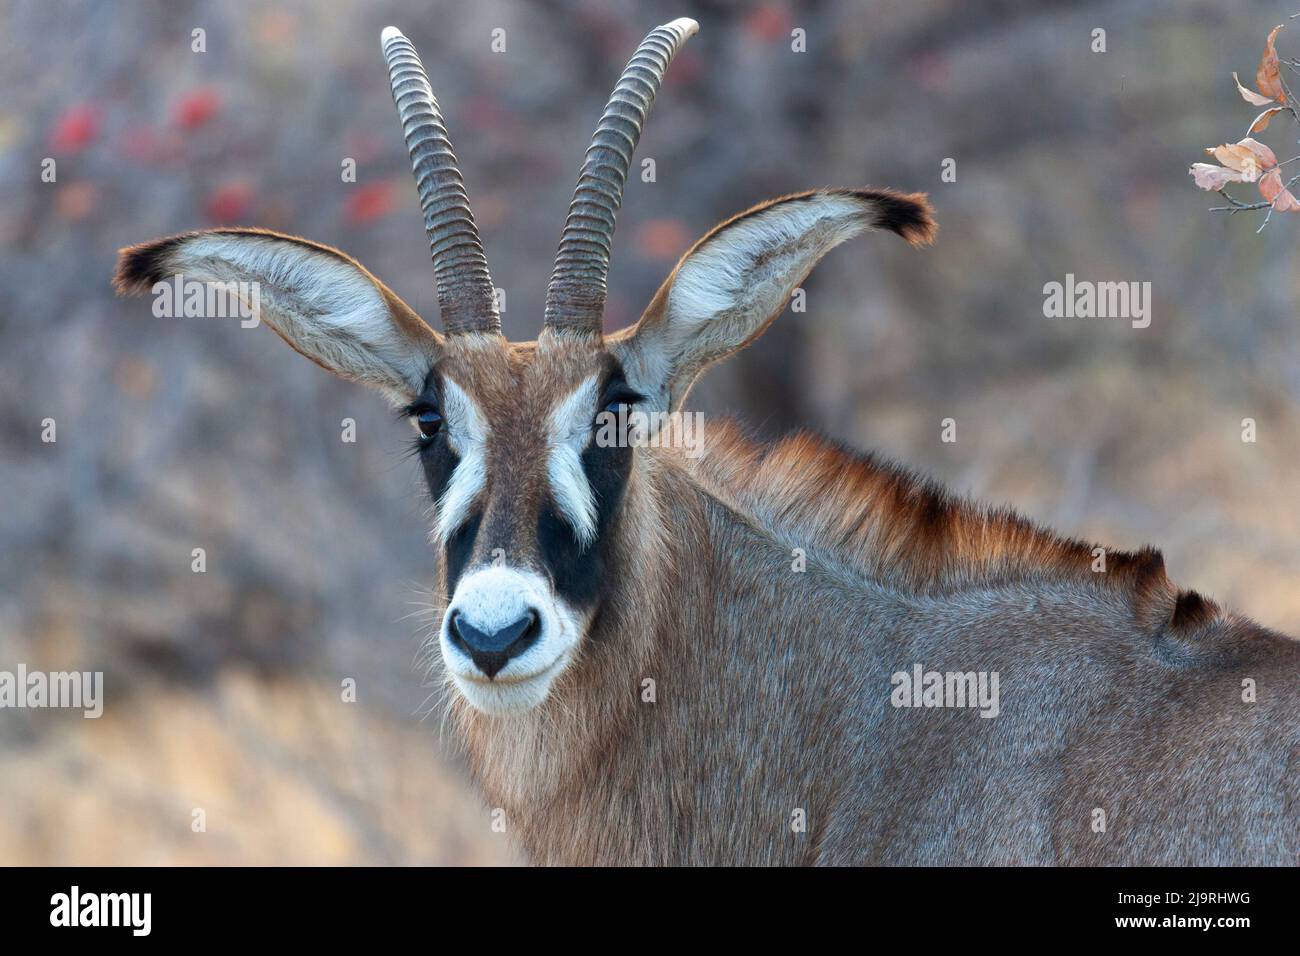 Africa, Tanzania. Colpo di testa di un'antilope roana. Foto Stock